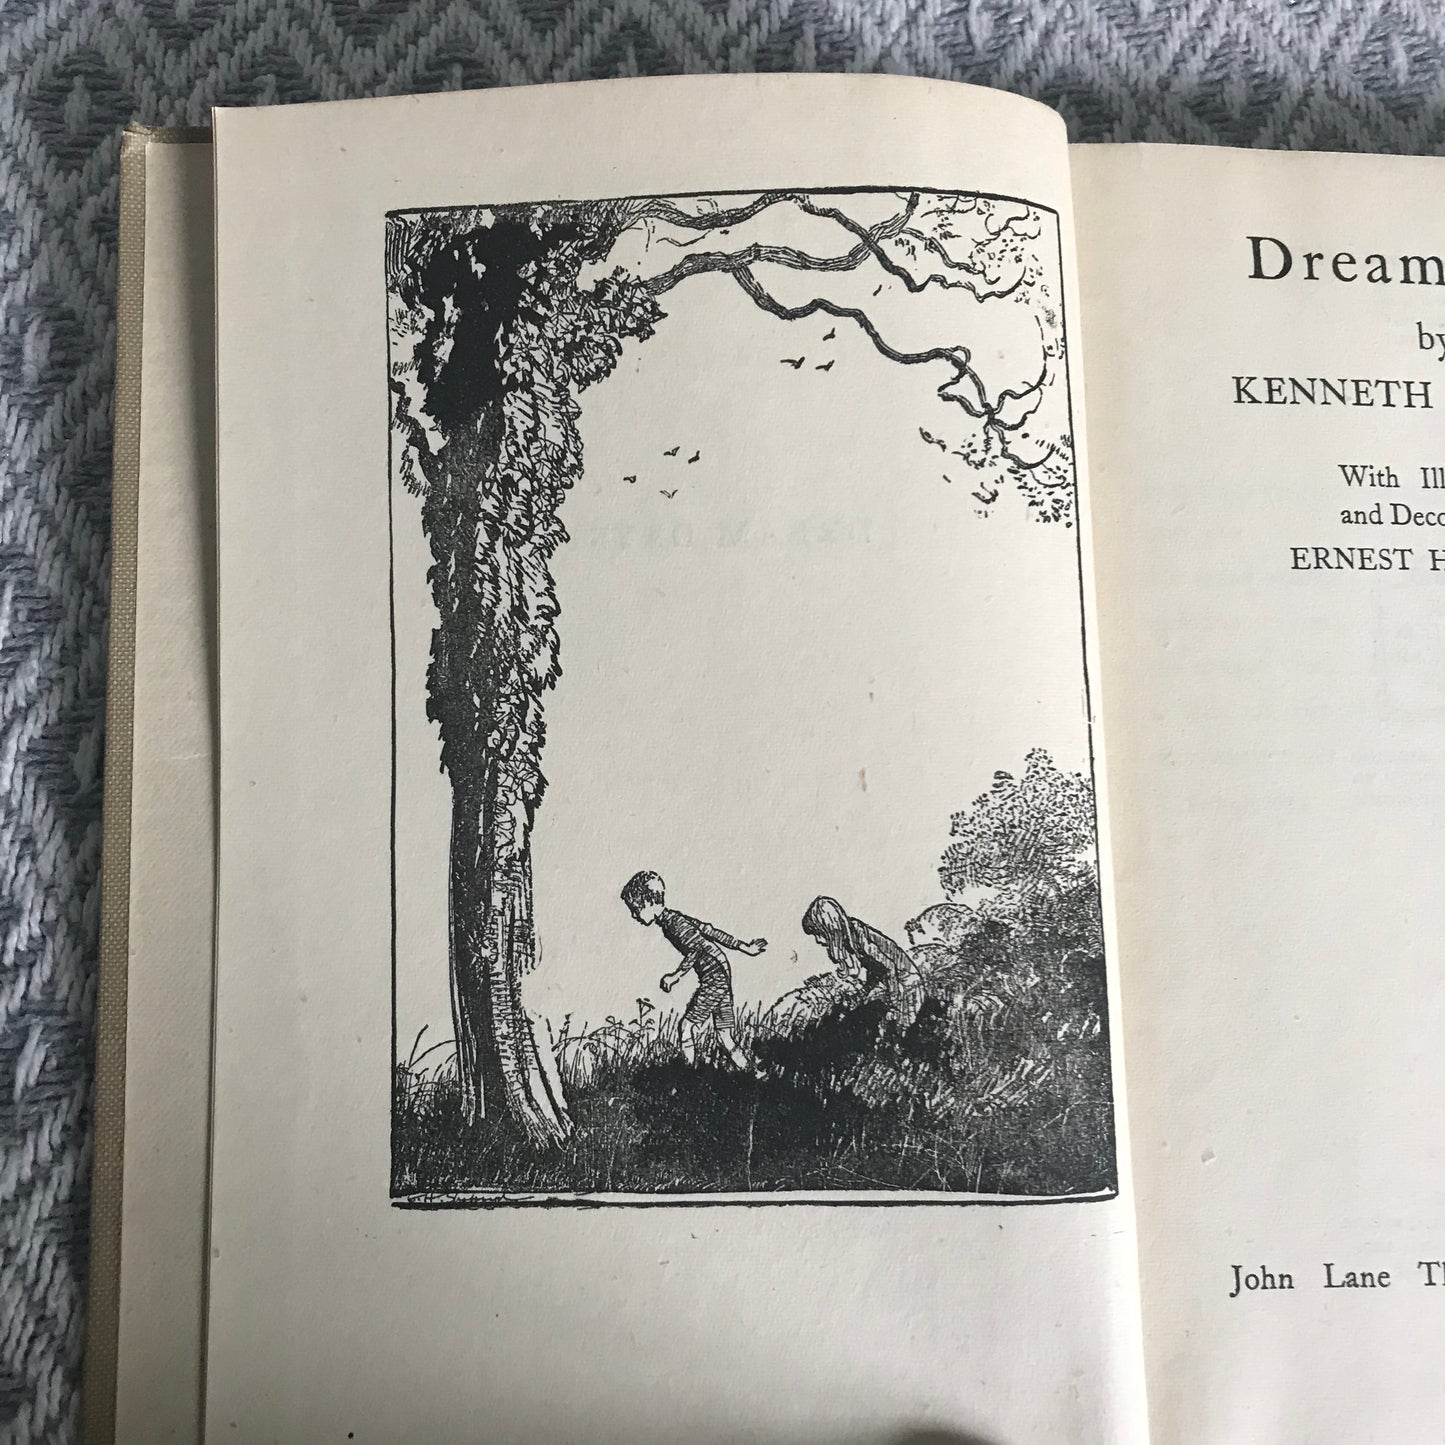 1945 Dream Days – Kenneth Grahame (Ernest Shepard Illust) John Lane The Bodley Head Publisher